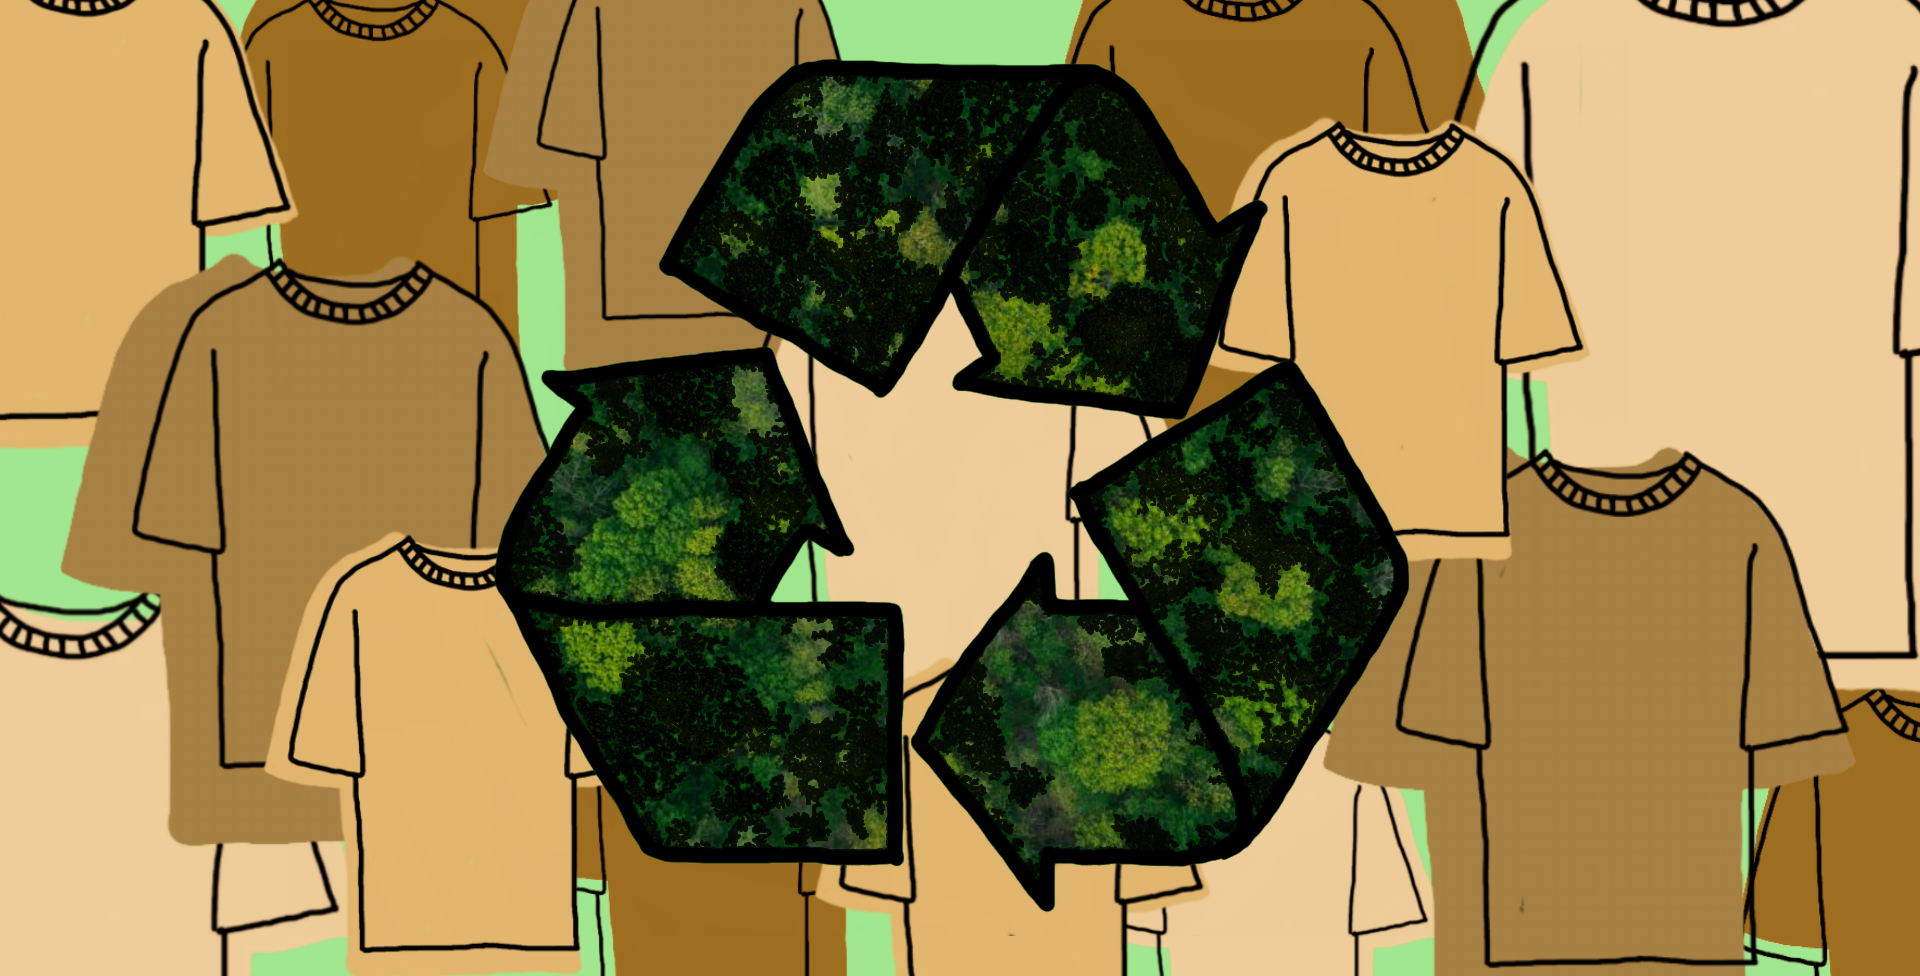 reciclagem